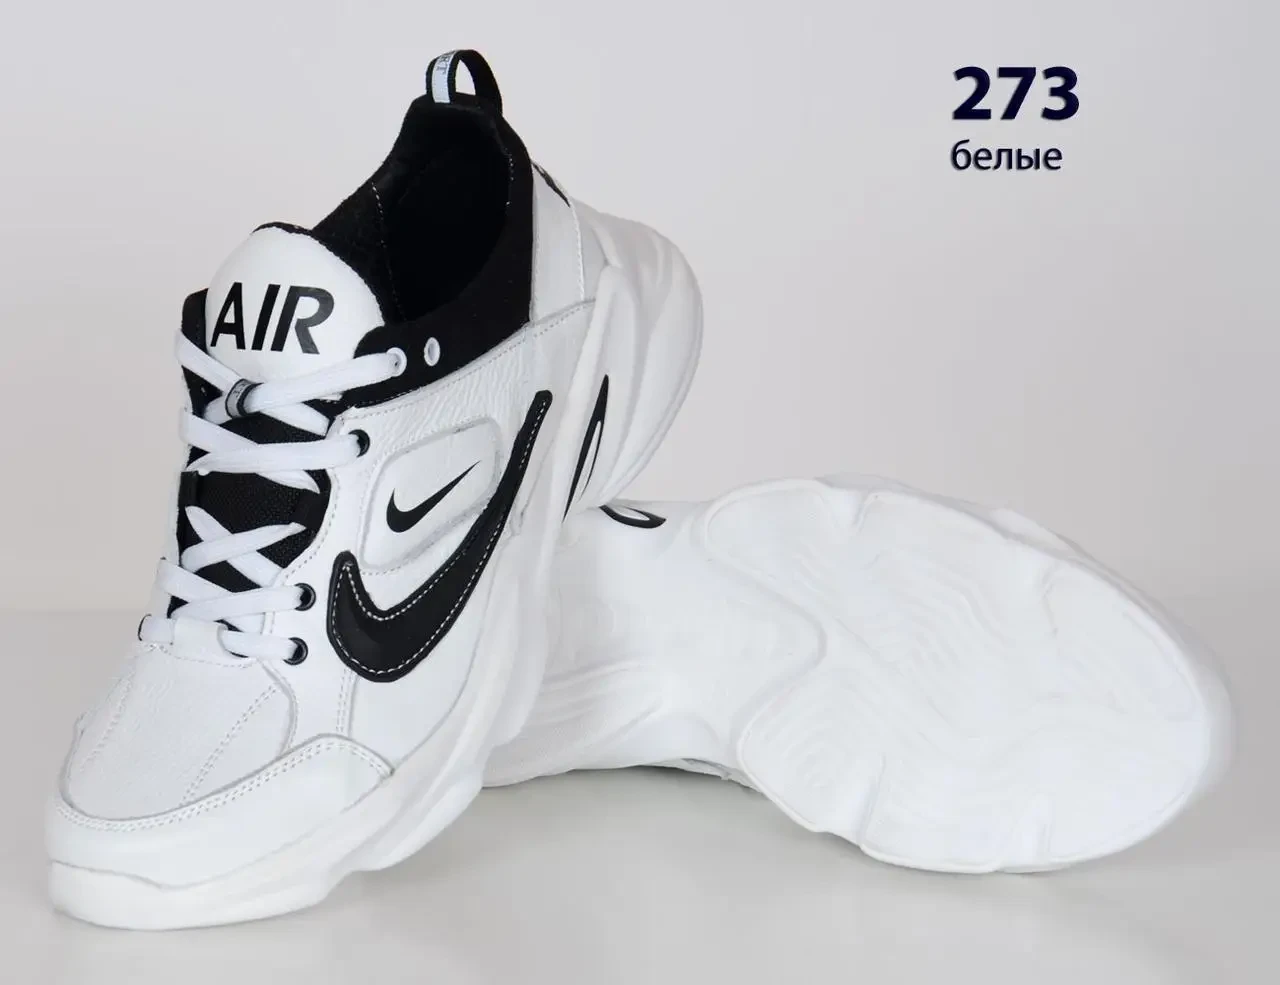 Шкіряні кросівки Nike  (273 біла) чоловічі спортивні кросівки шкіряні чоловічі